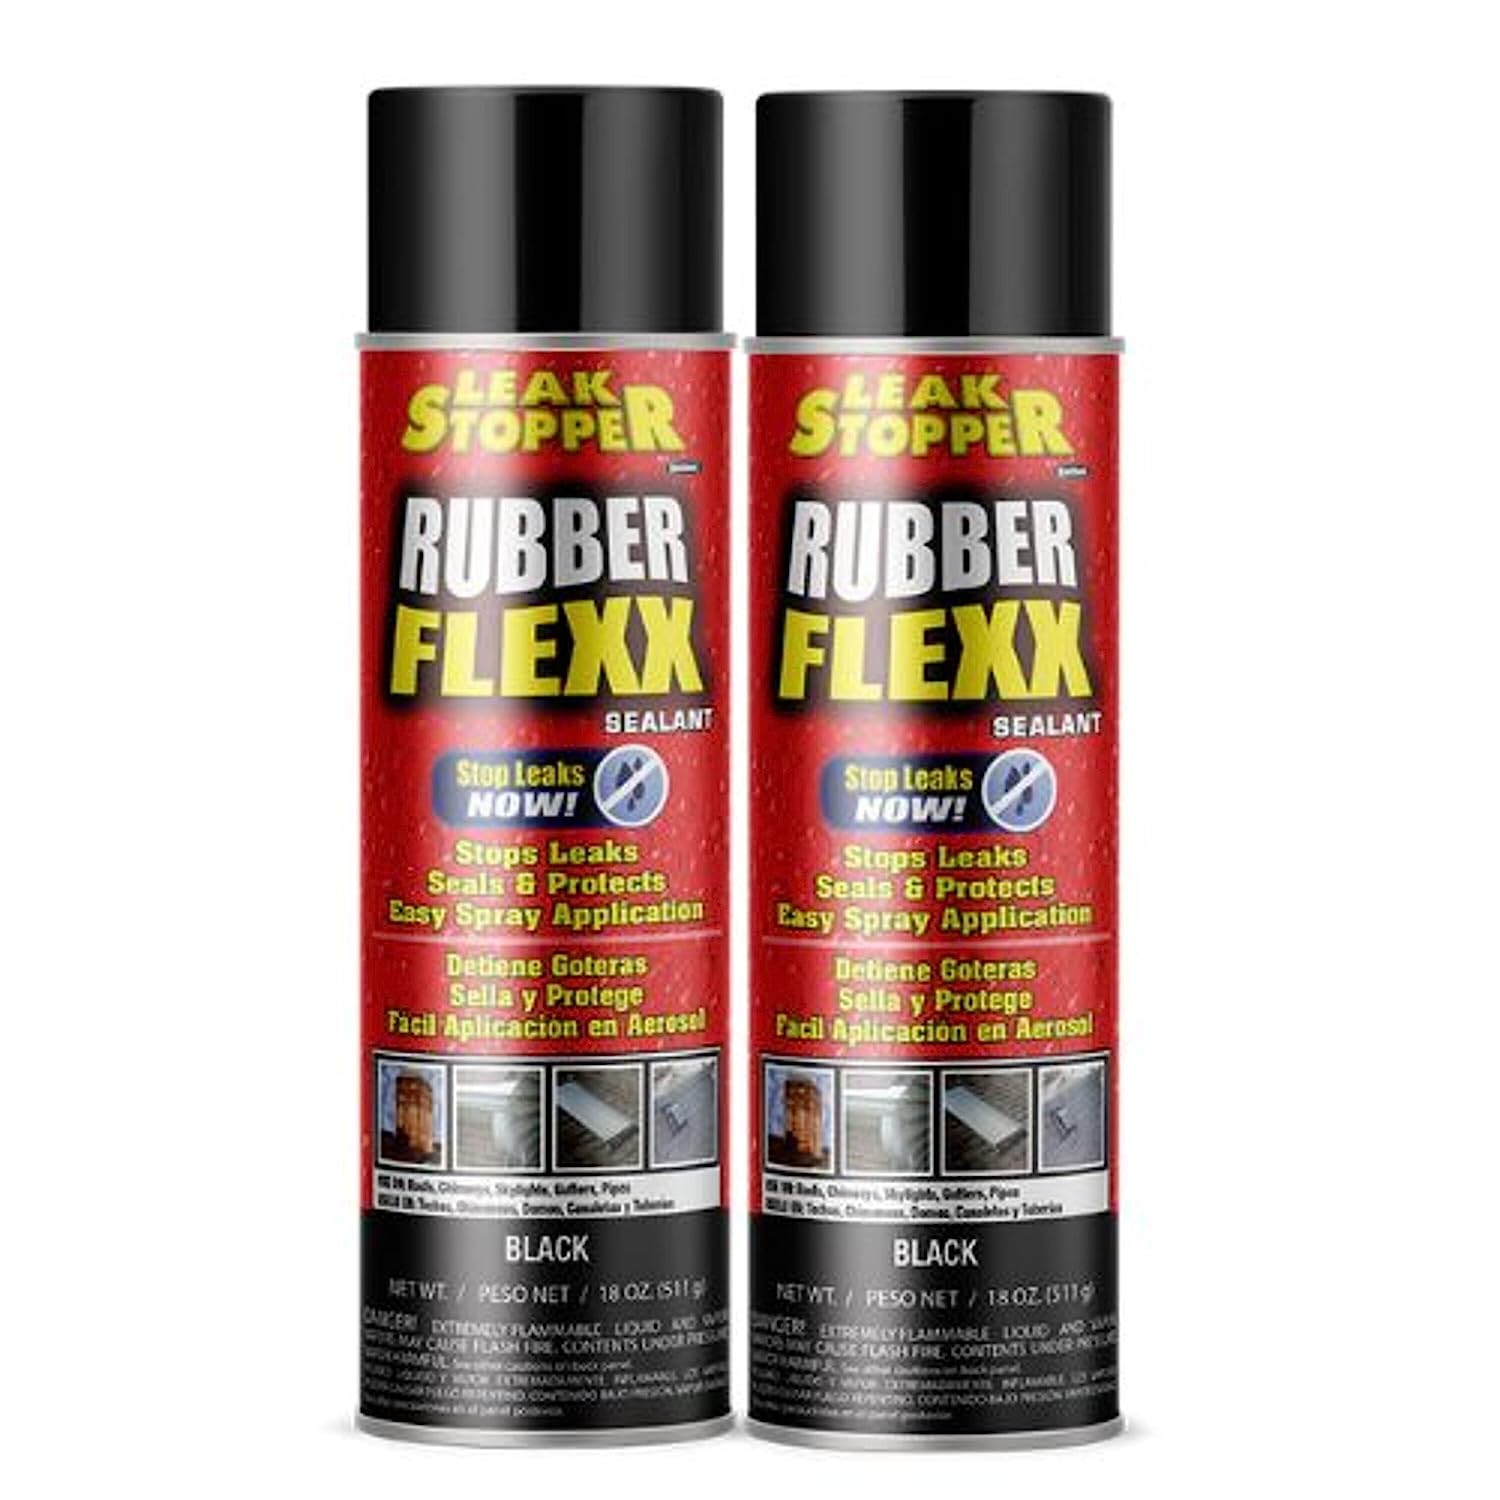 Leak Stopper Rubber Flexx – 18oz Waterproof Repair & [...]